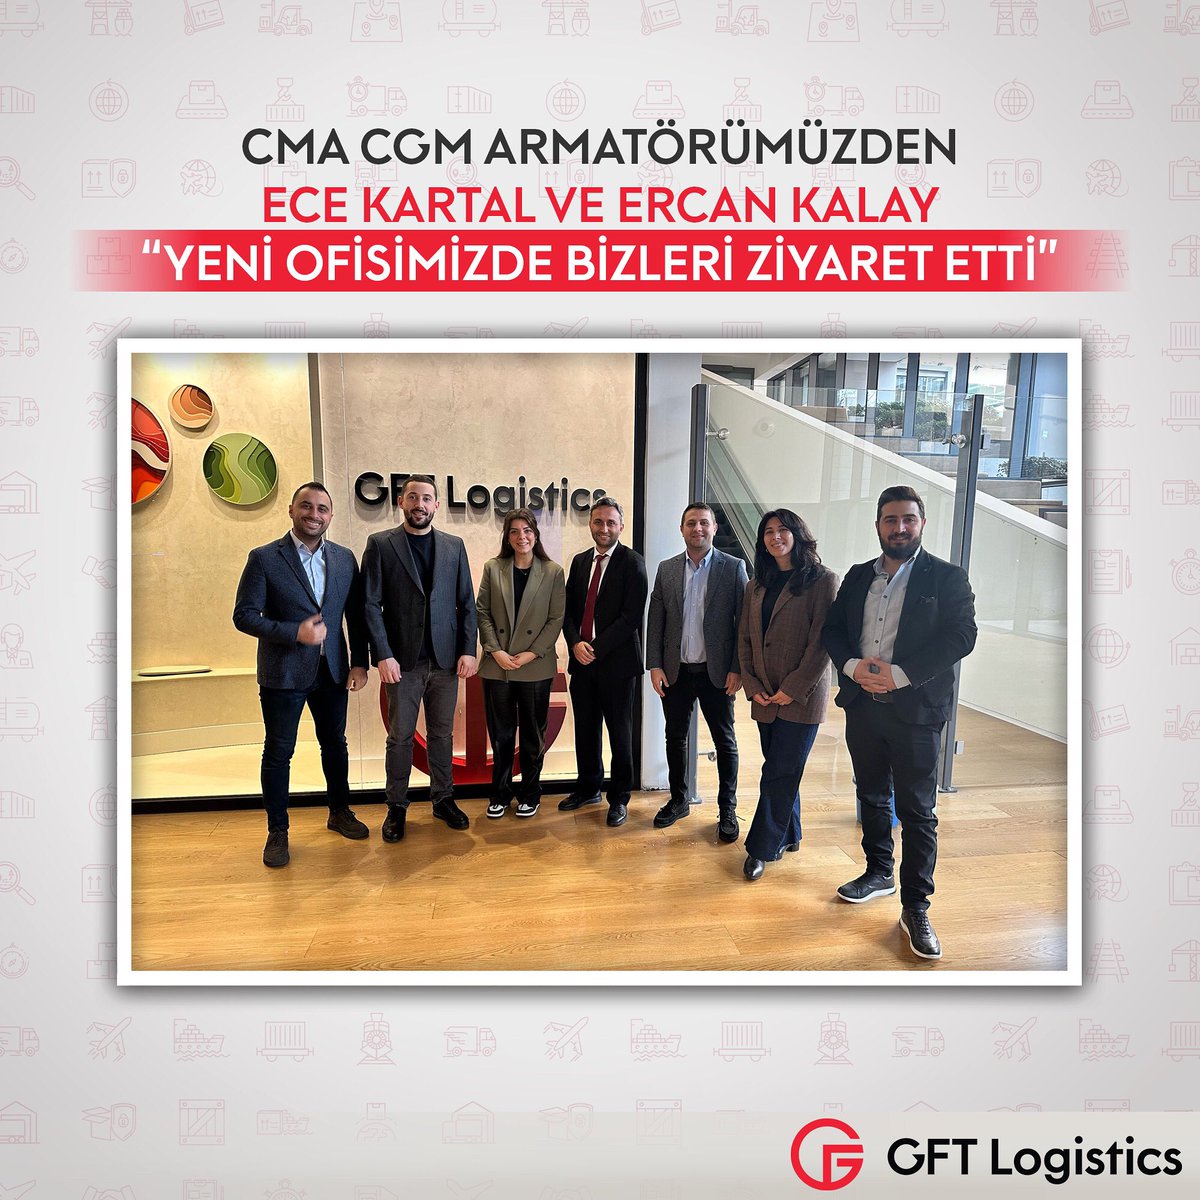 ✨ GFT Lojistik olarak, CMA CGM armatörümüzden Ece Kartal ve ERCAN KALAY'ın yeni ofisimizi ziyaretlerini büyük bir memnuniyetle karşıladık. #internationaltransport #logisticcompany